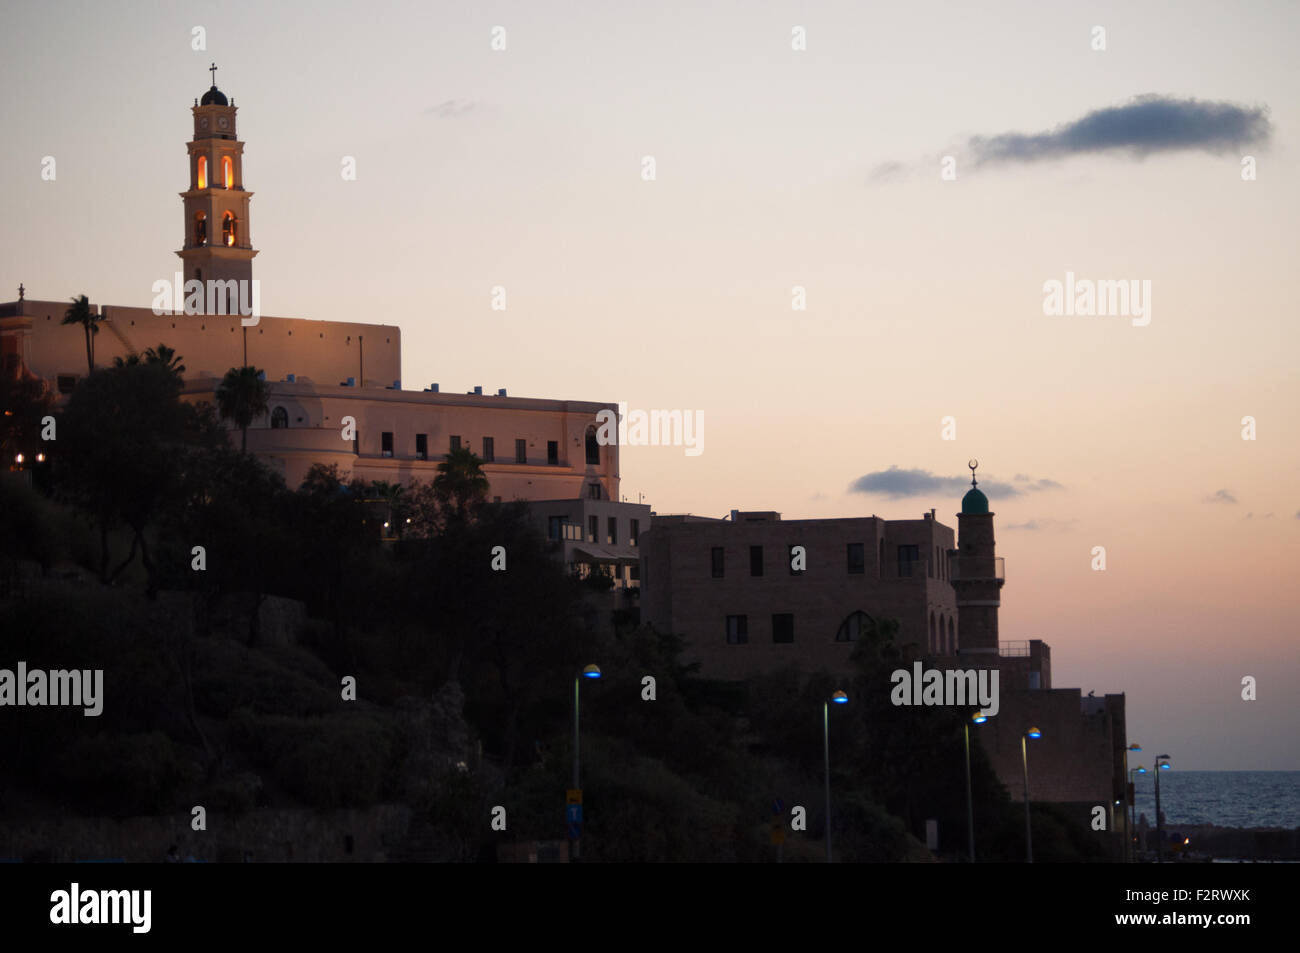 Journée d'été, le coucher du soleil sur le clocher de l'église Saint Pierre et la Grande Mosquée, la vieille ville de Jaffa, Haifa, Yaffo, Tel Aviv, Israël Banque D'Images